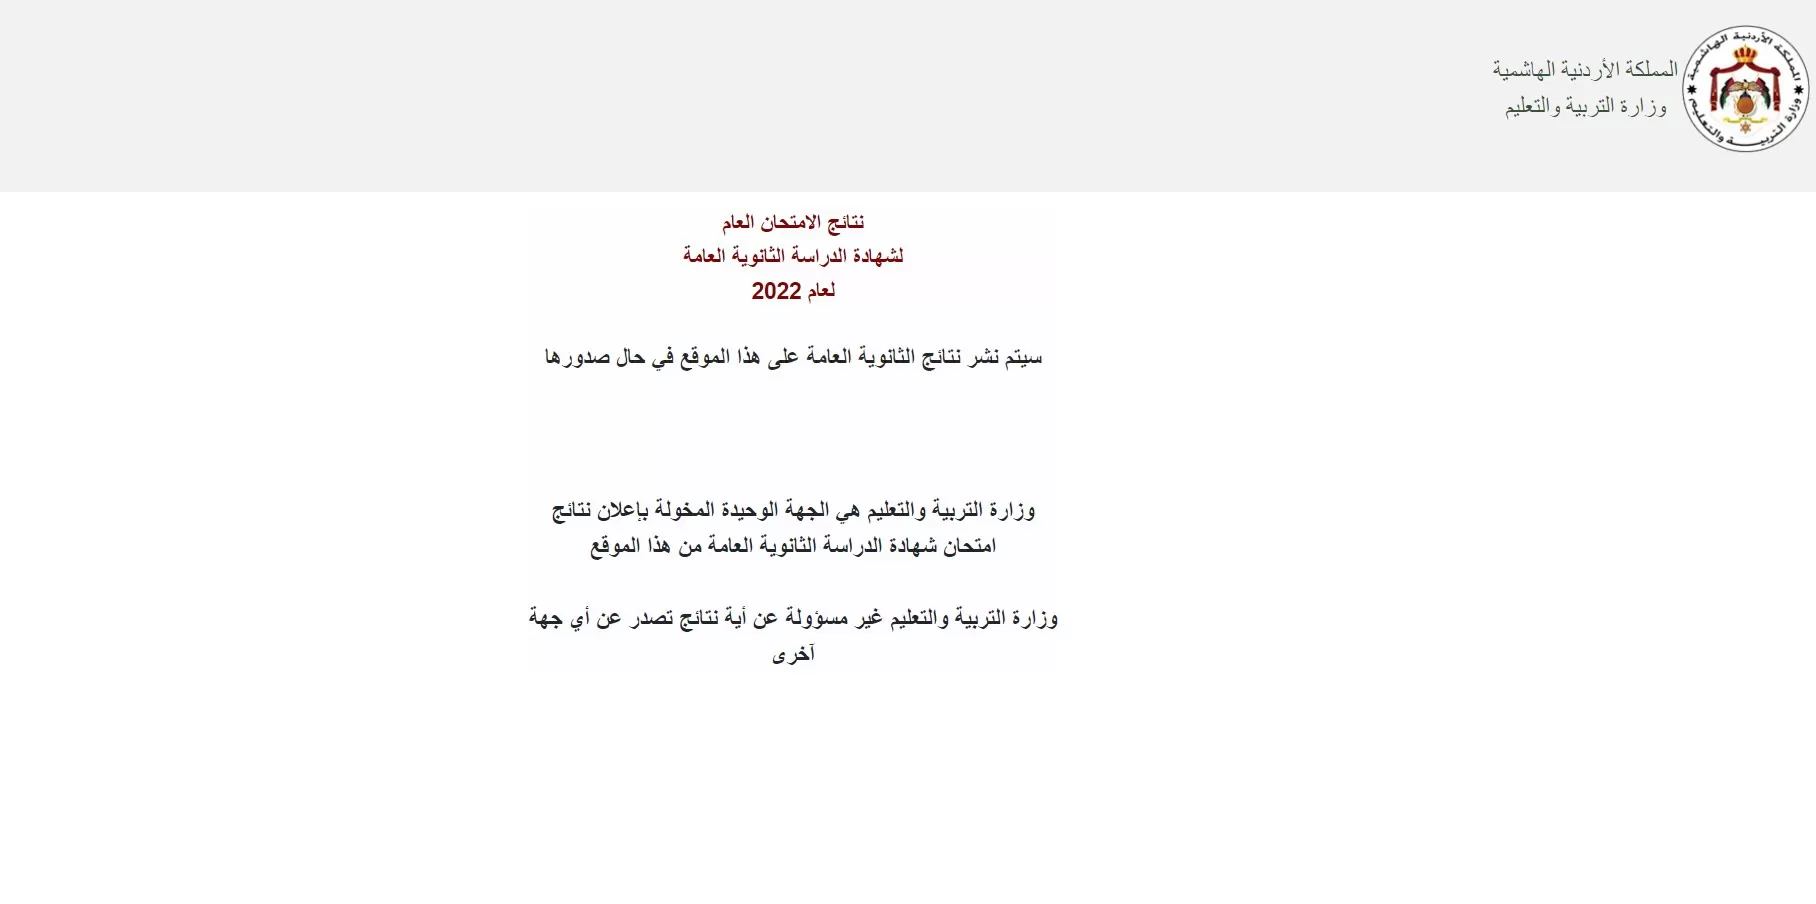 مدار الساعة,أخبار الأردن,اخبار الاردن,وزارة التربية والتعليم,الملكة رانيا العبدالله